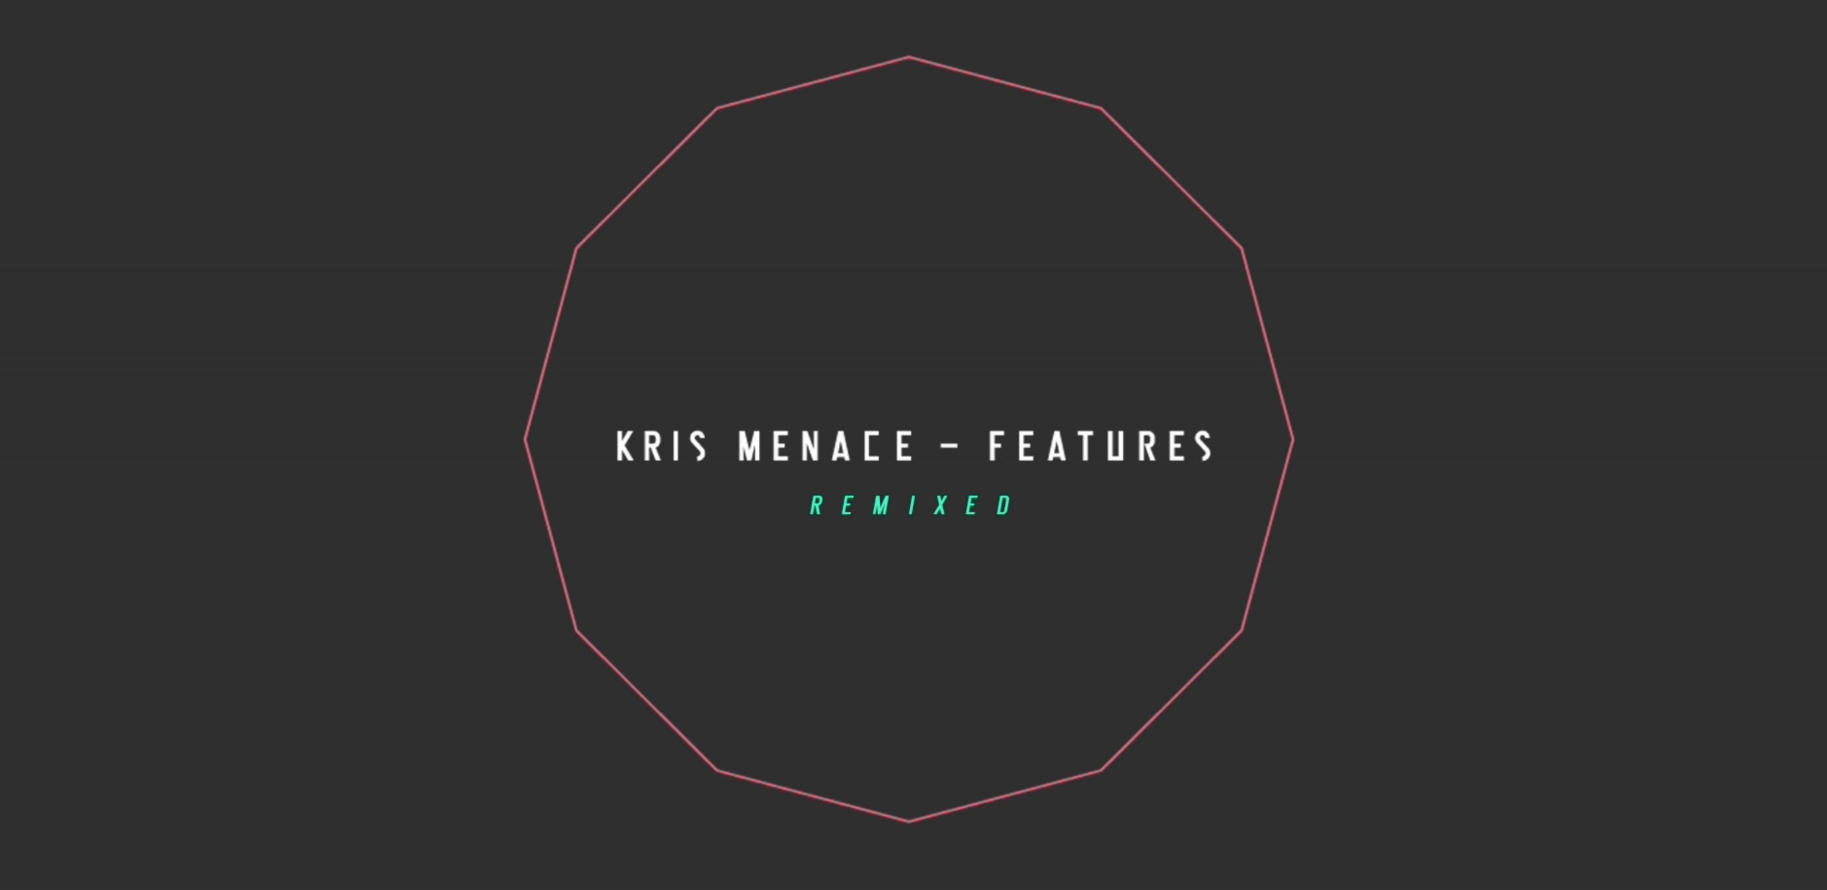 Kris Menace neues Remix-Album mit Xavier-Feature